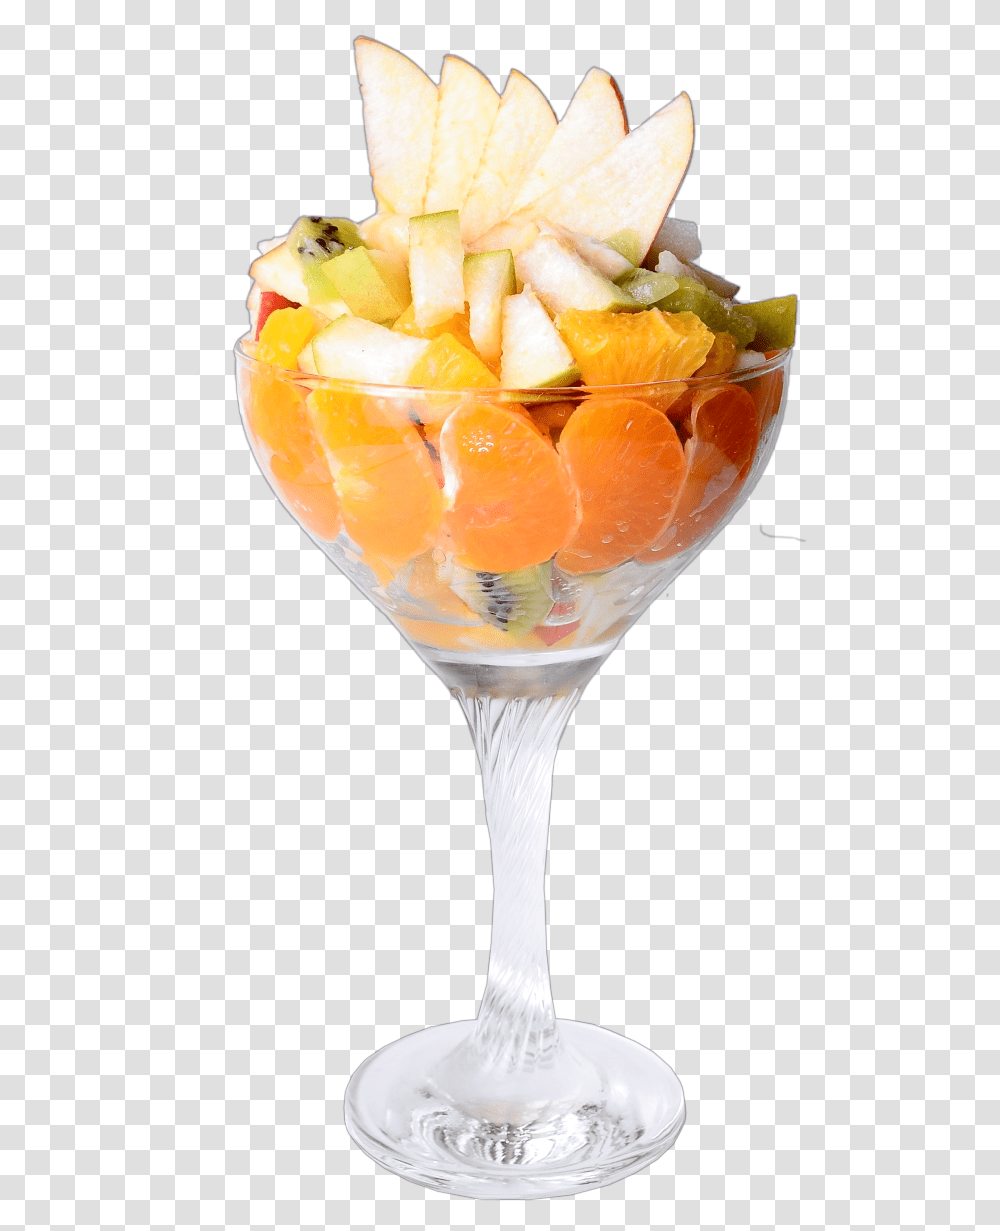 Fruit Salad Clipart, Plant, Citrus Fruit, Food, Glass Transparent Png